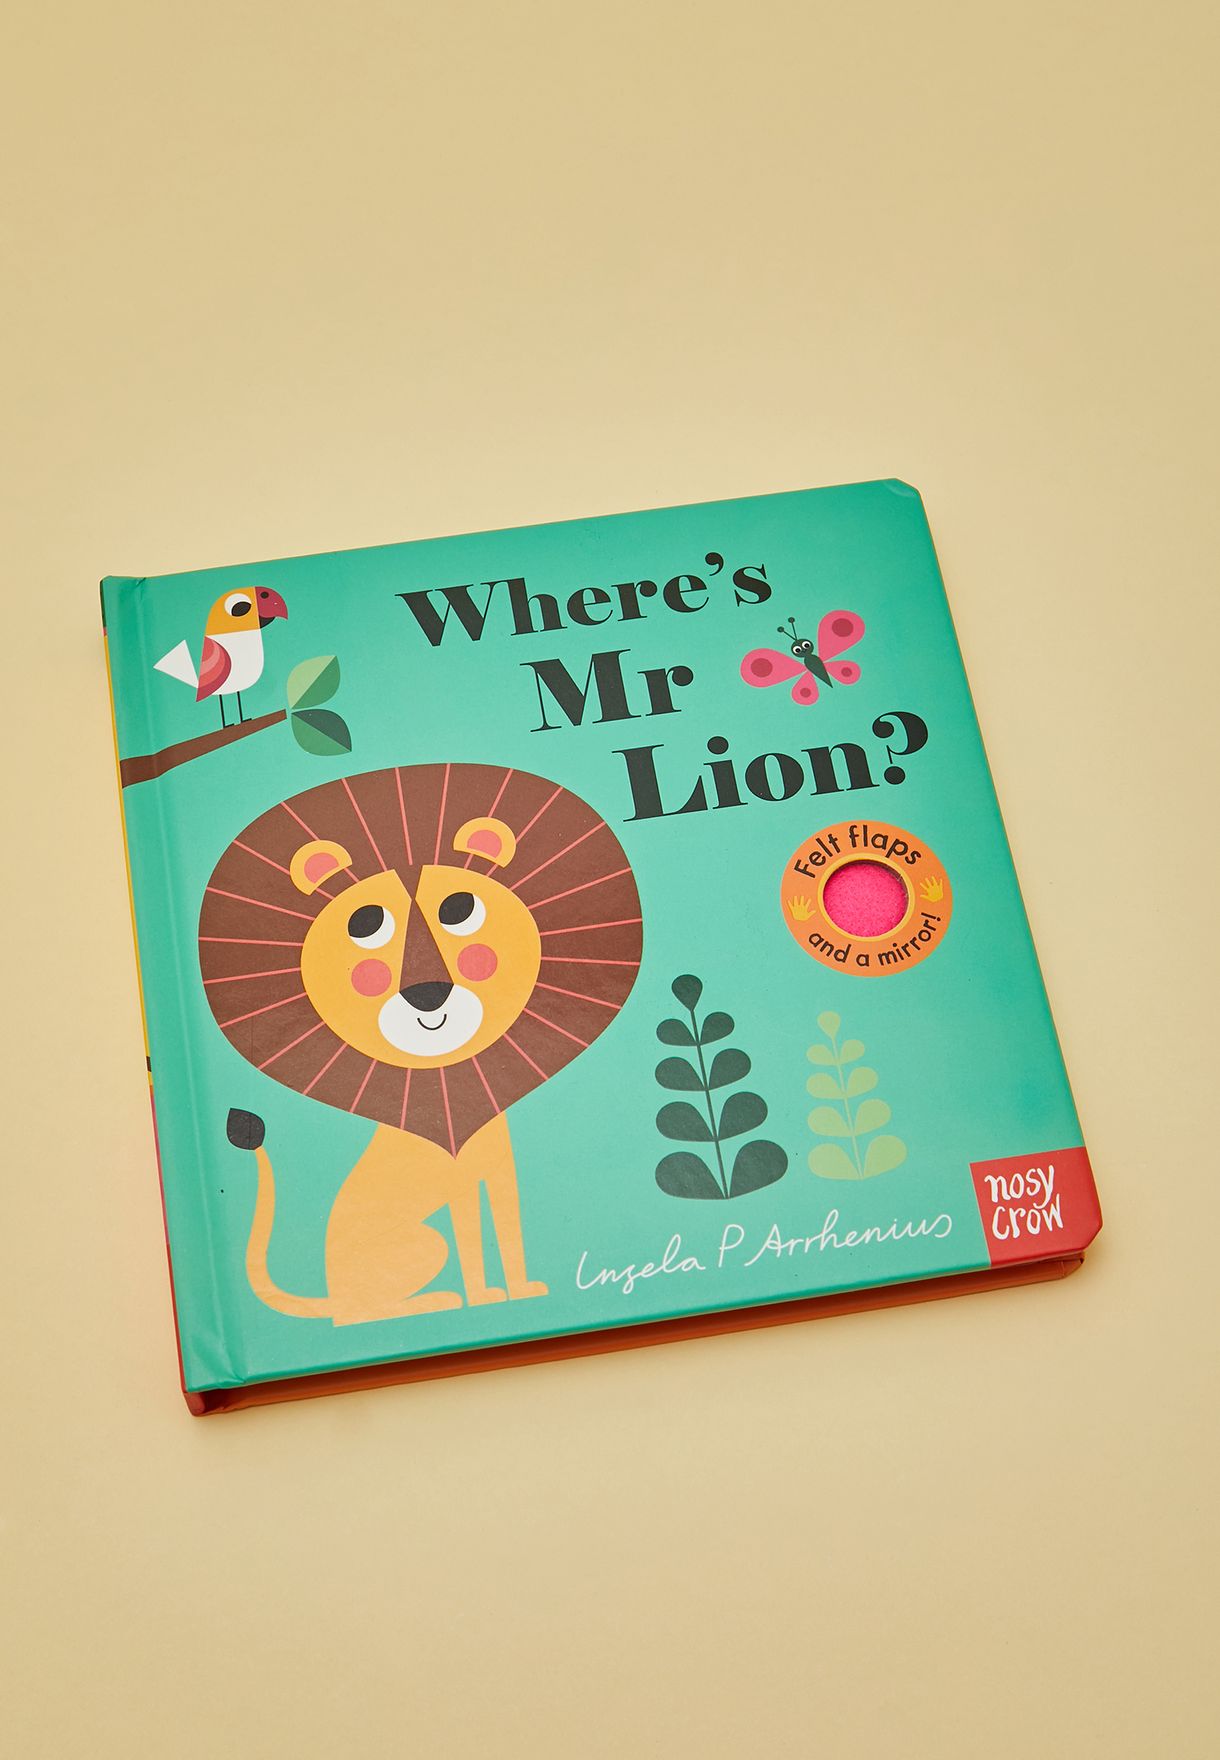 كتاب" Where'S Mr Lion" (أين السيد الأسد)